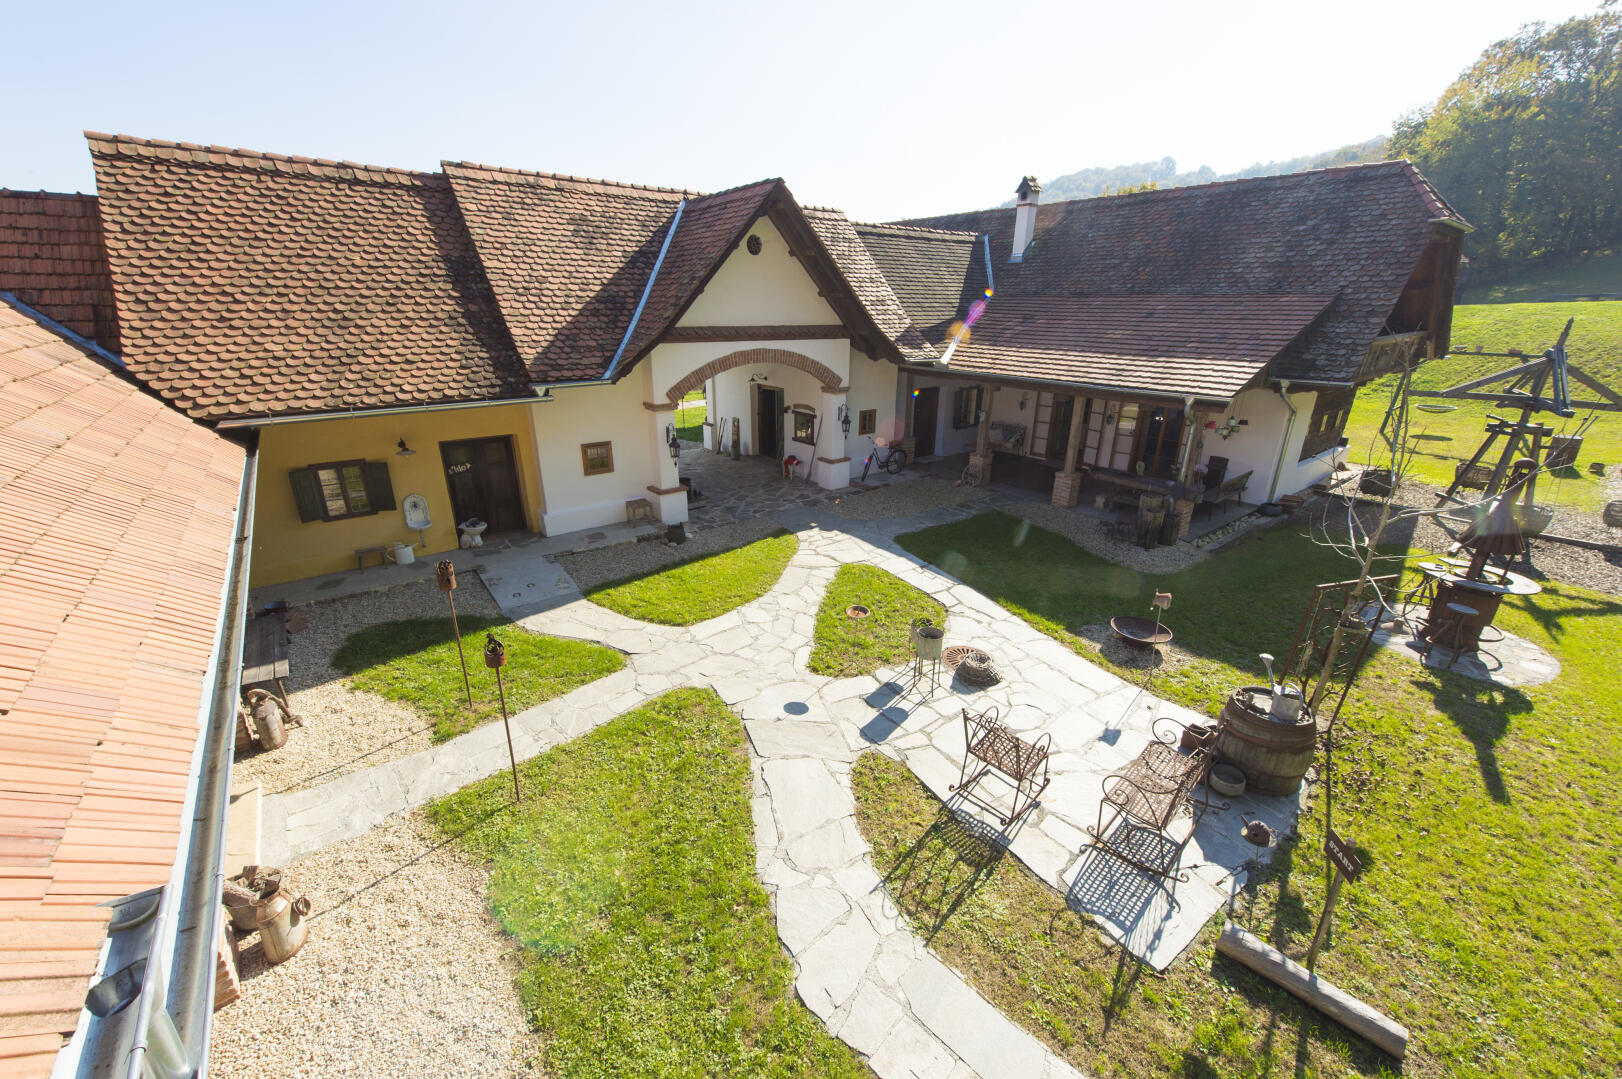 Haus zu kaufen: Ober-Henndorf 59, 8380 Henndorf im Burgenland - Landhaus in Thermenregion (75)